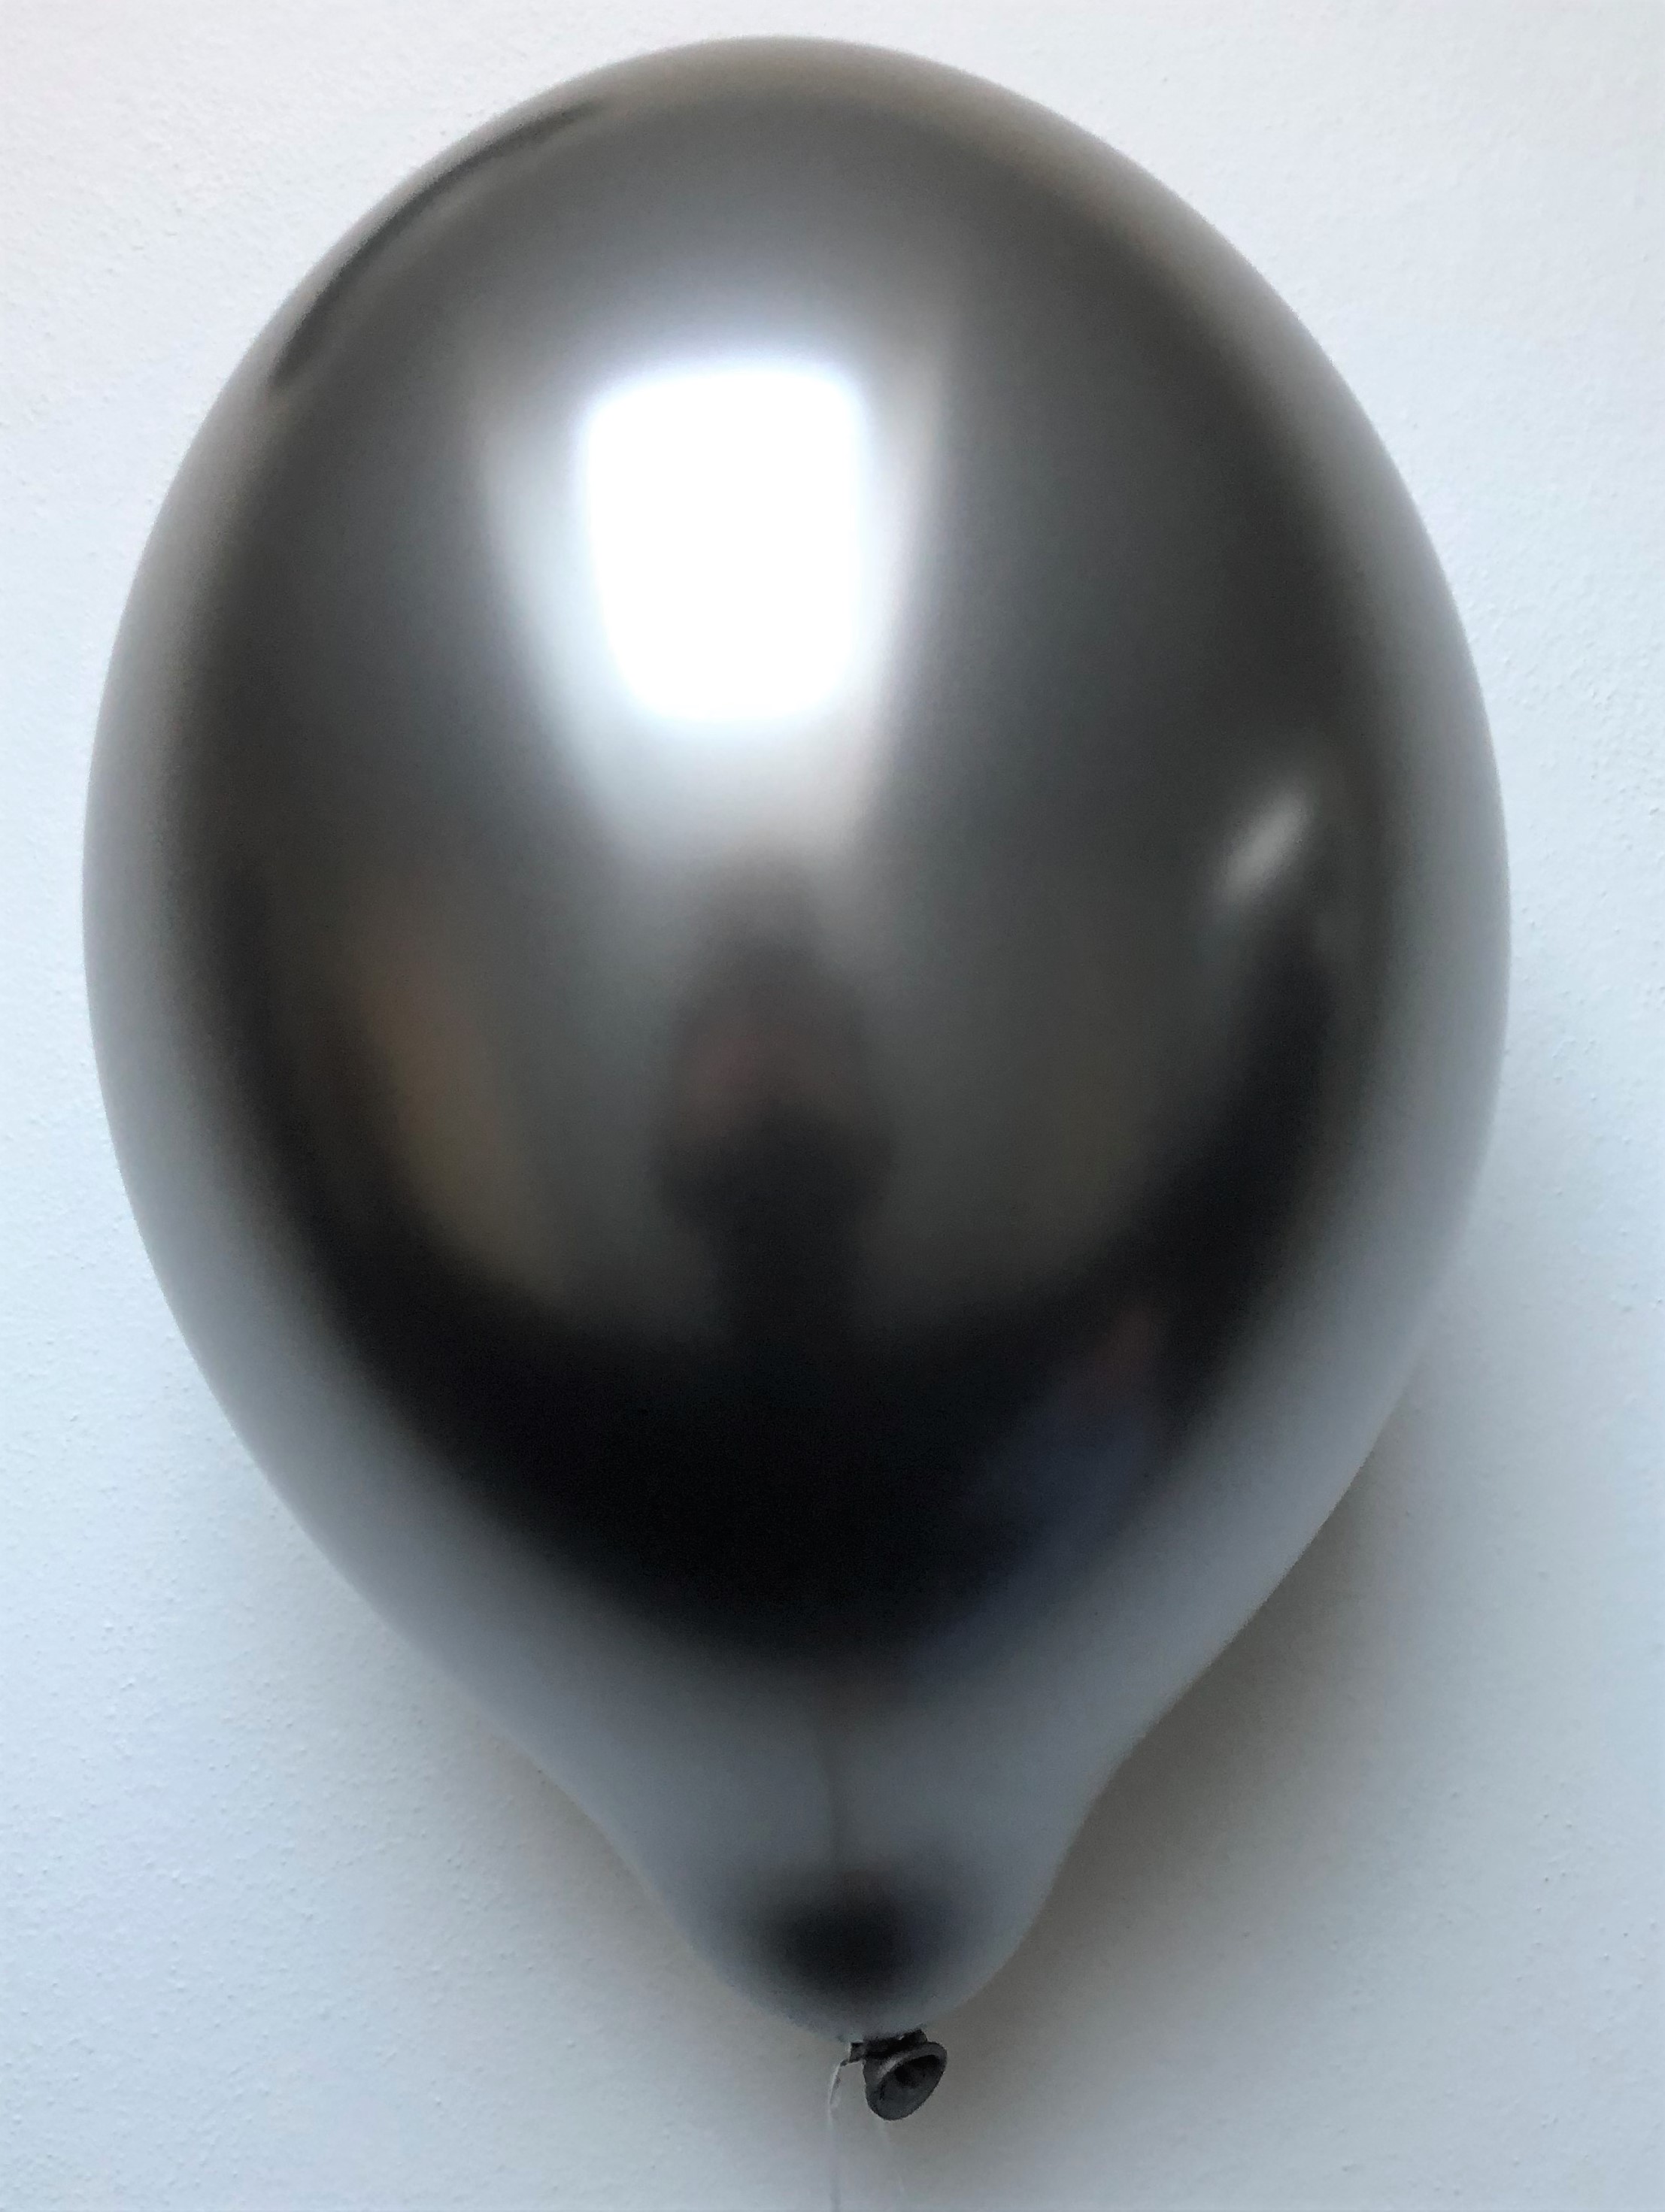 Balónky chromové šedé 6 ks 30 cm